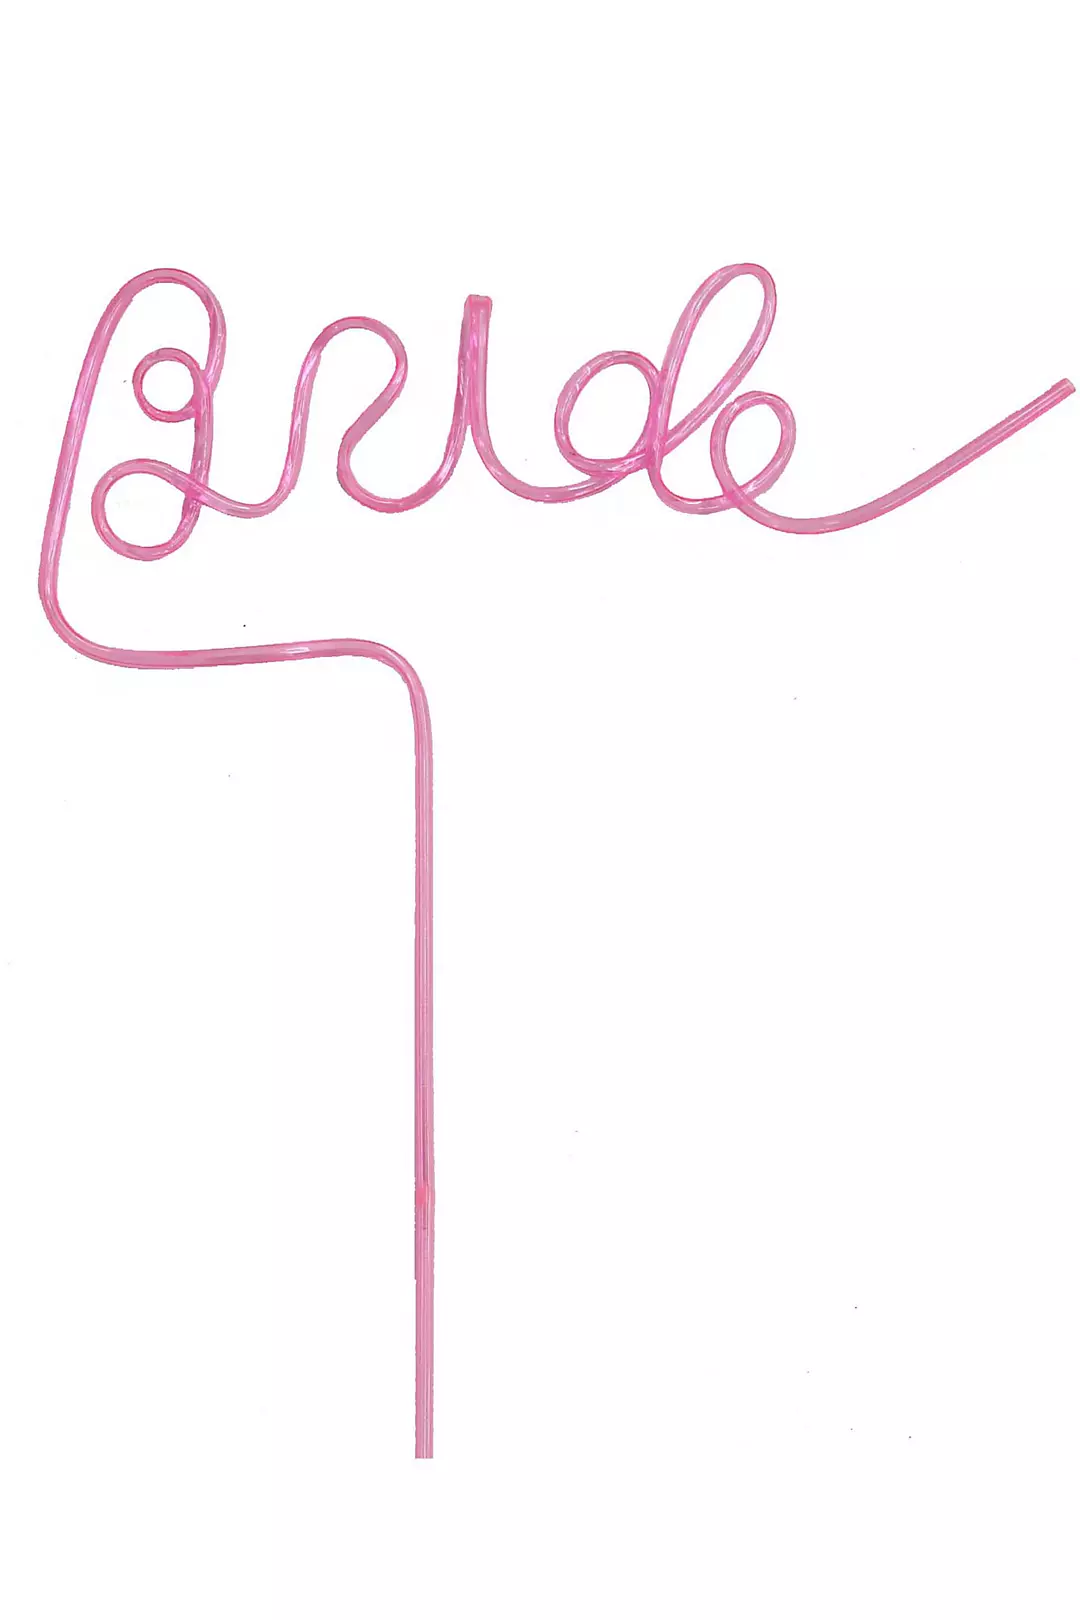 Bride Cursive Straw Image